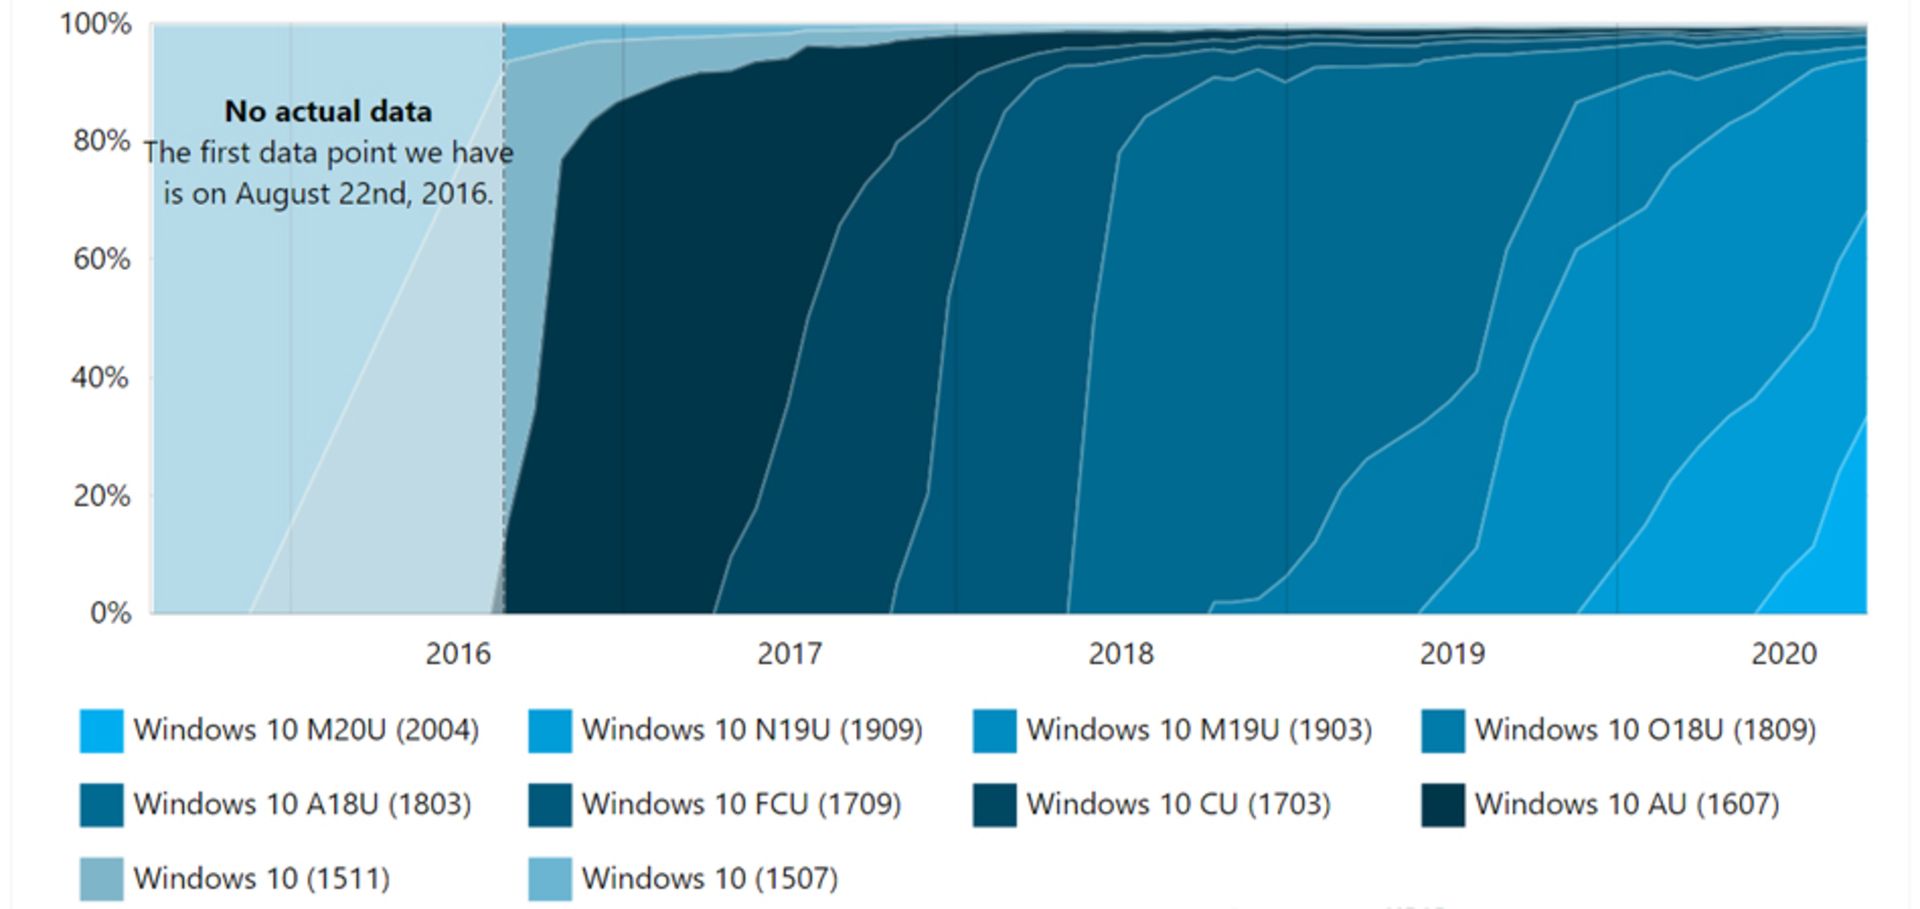 سهم نسخه های ویندوز ۱۰ / Windows 10 از بازار کامپیوتر